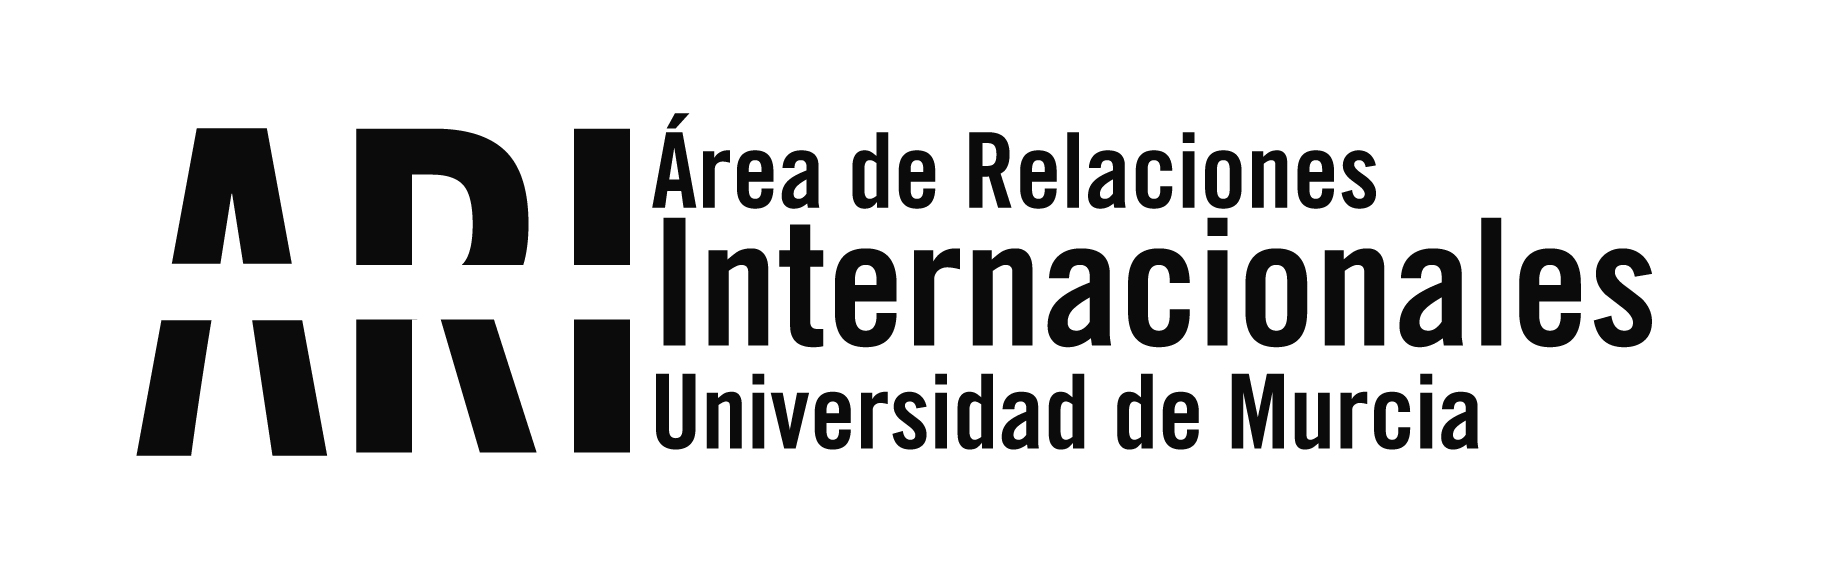 Visita de rectores de universidades del Caribe colombiano para potenciar la internacionalización - Área de Relaciones Internacionales